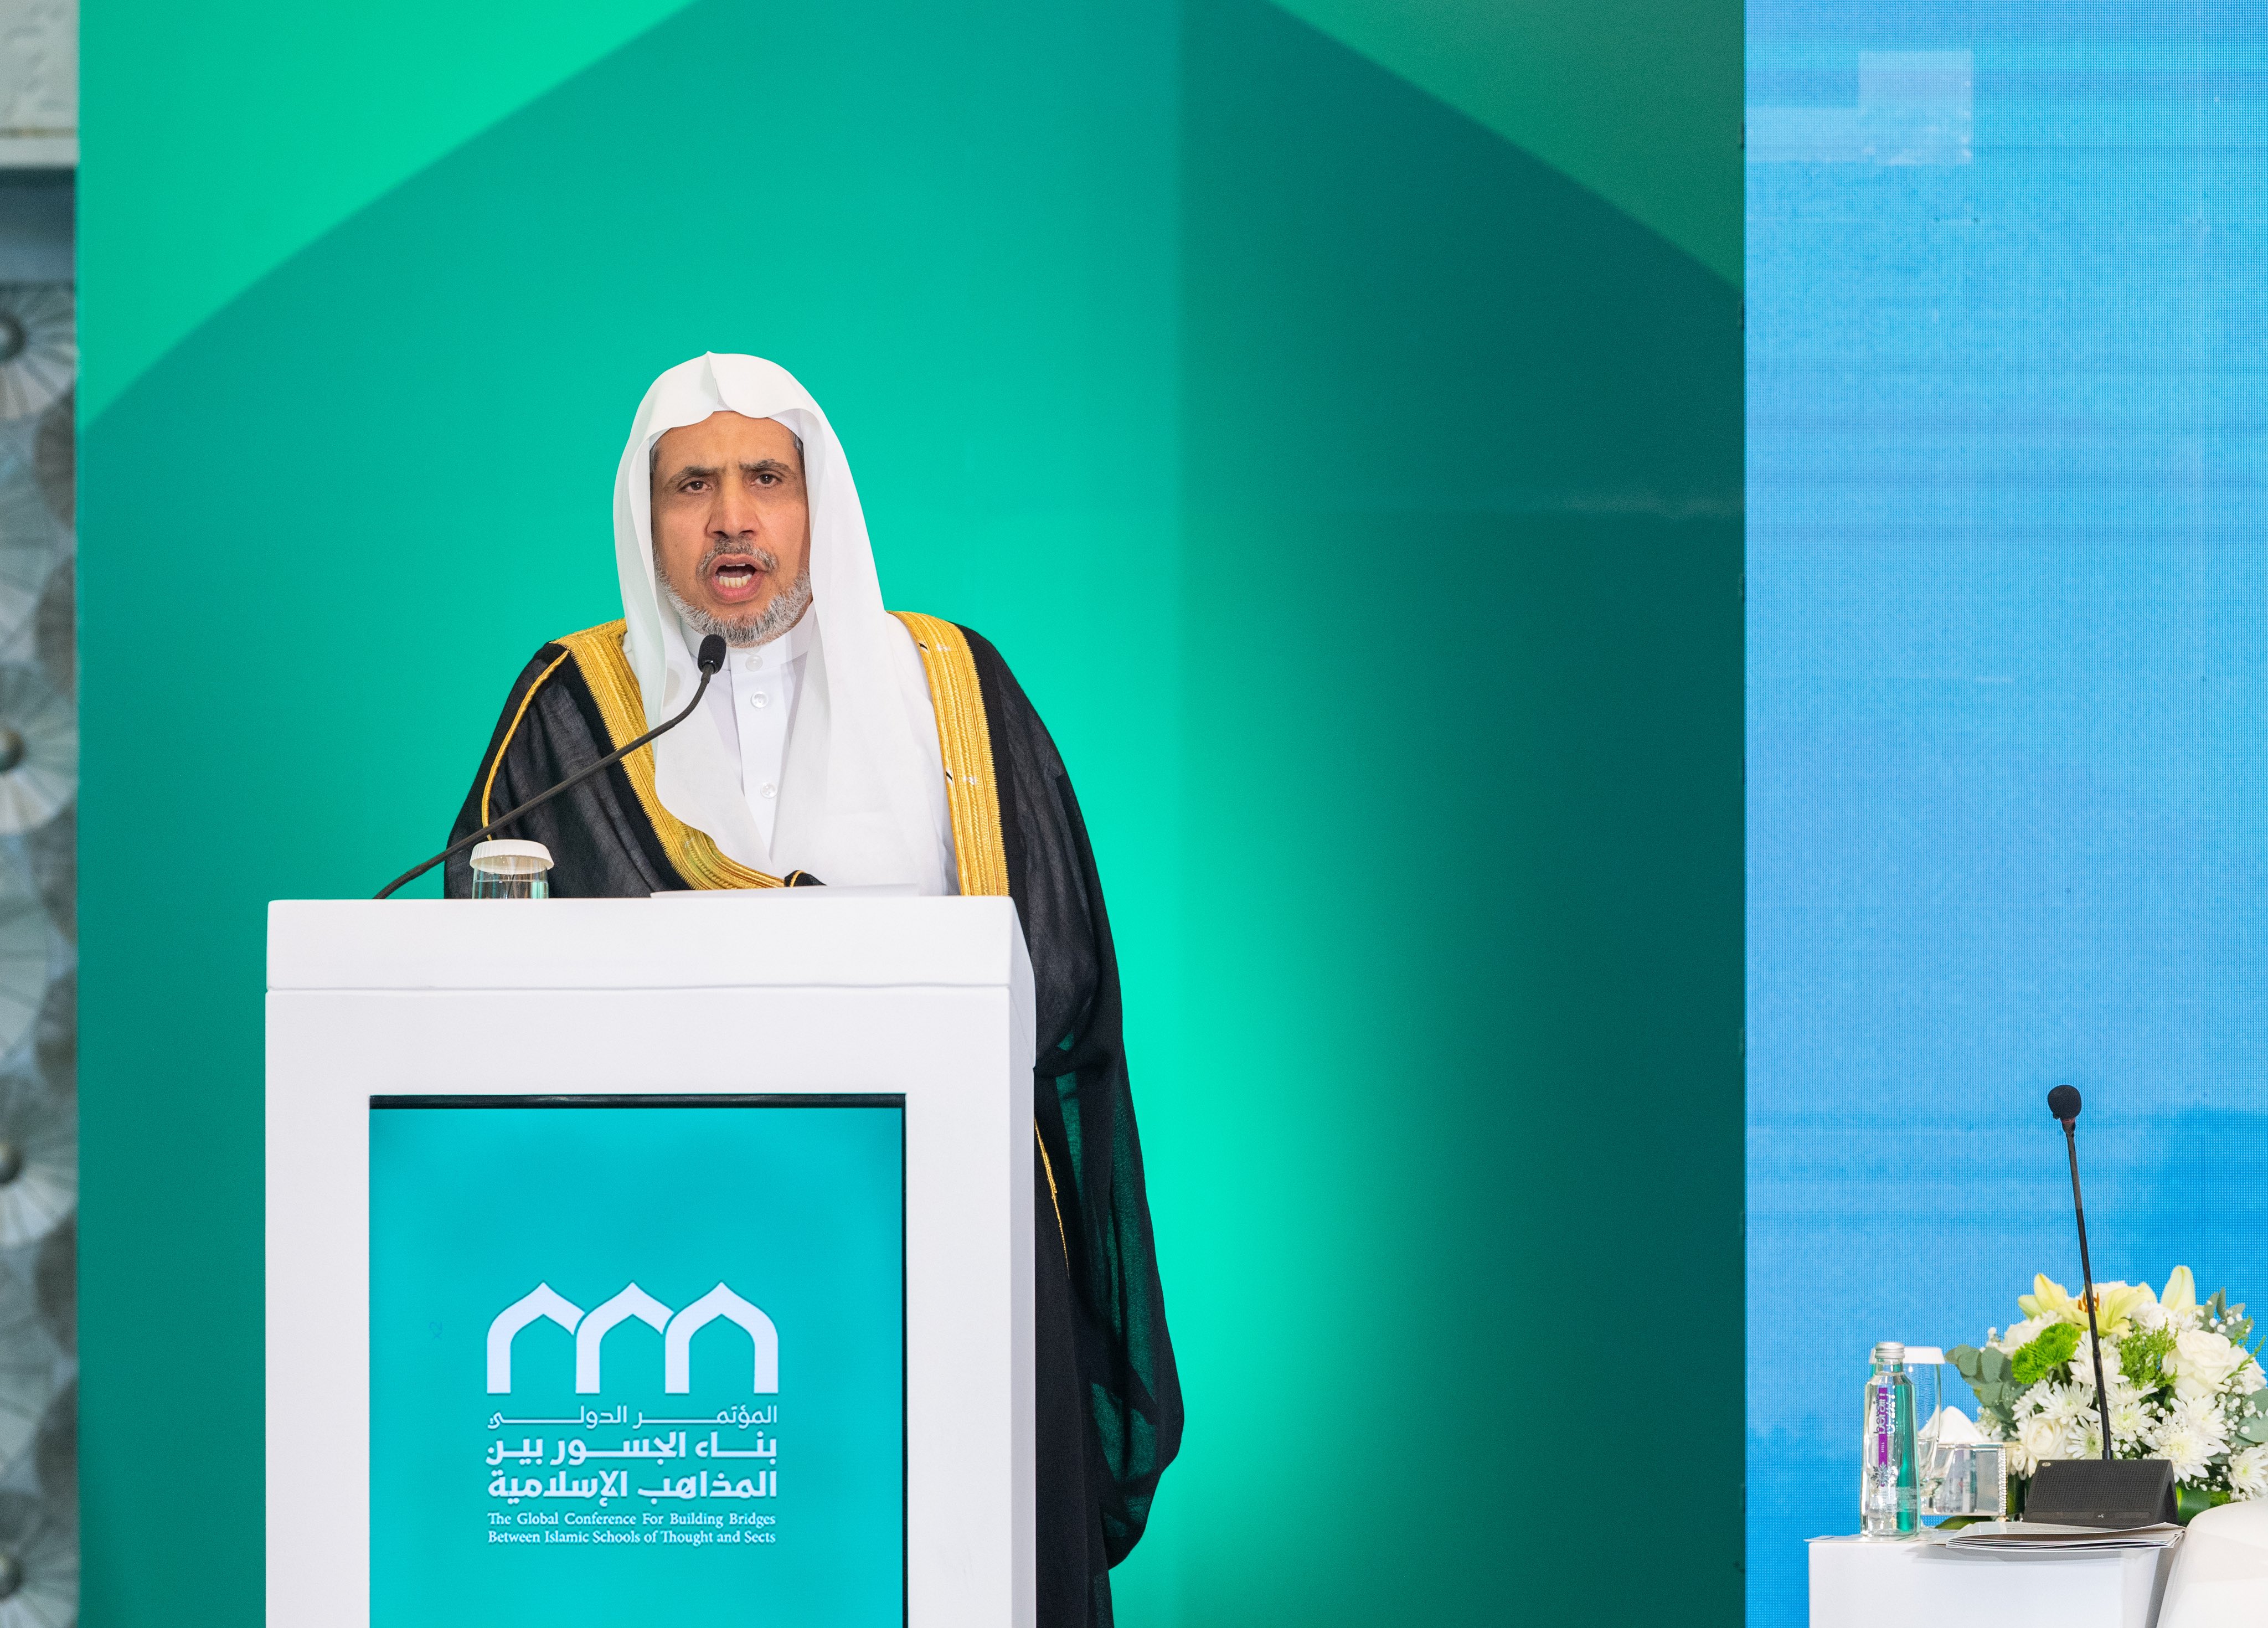 سیکرٹری جنرل رابطہ اور چیئرمین مسلم علماء کونسل شیخ ڈاکٹر محمد بن عبد الکریم العیسی،”اسلامی مذاہب کے درمیان پلوں کی تعمیر“ کانفرنس کےافتتاحی اجلاس سے خطاب کرتے ہوئے: